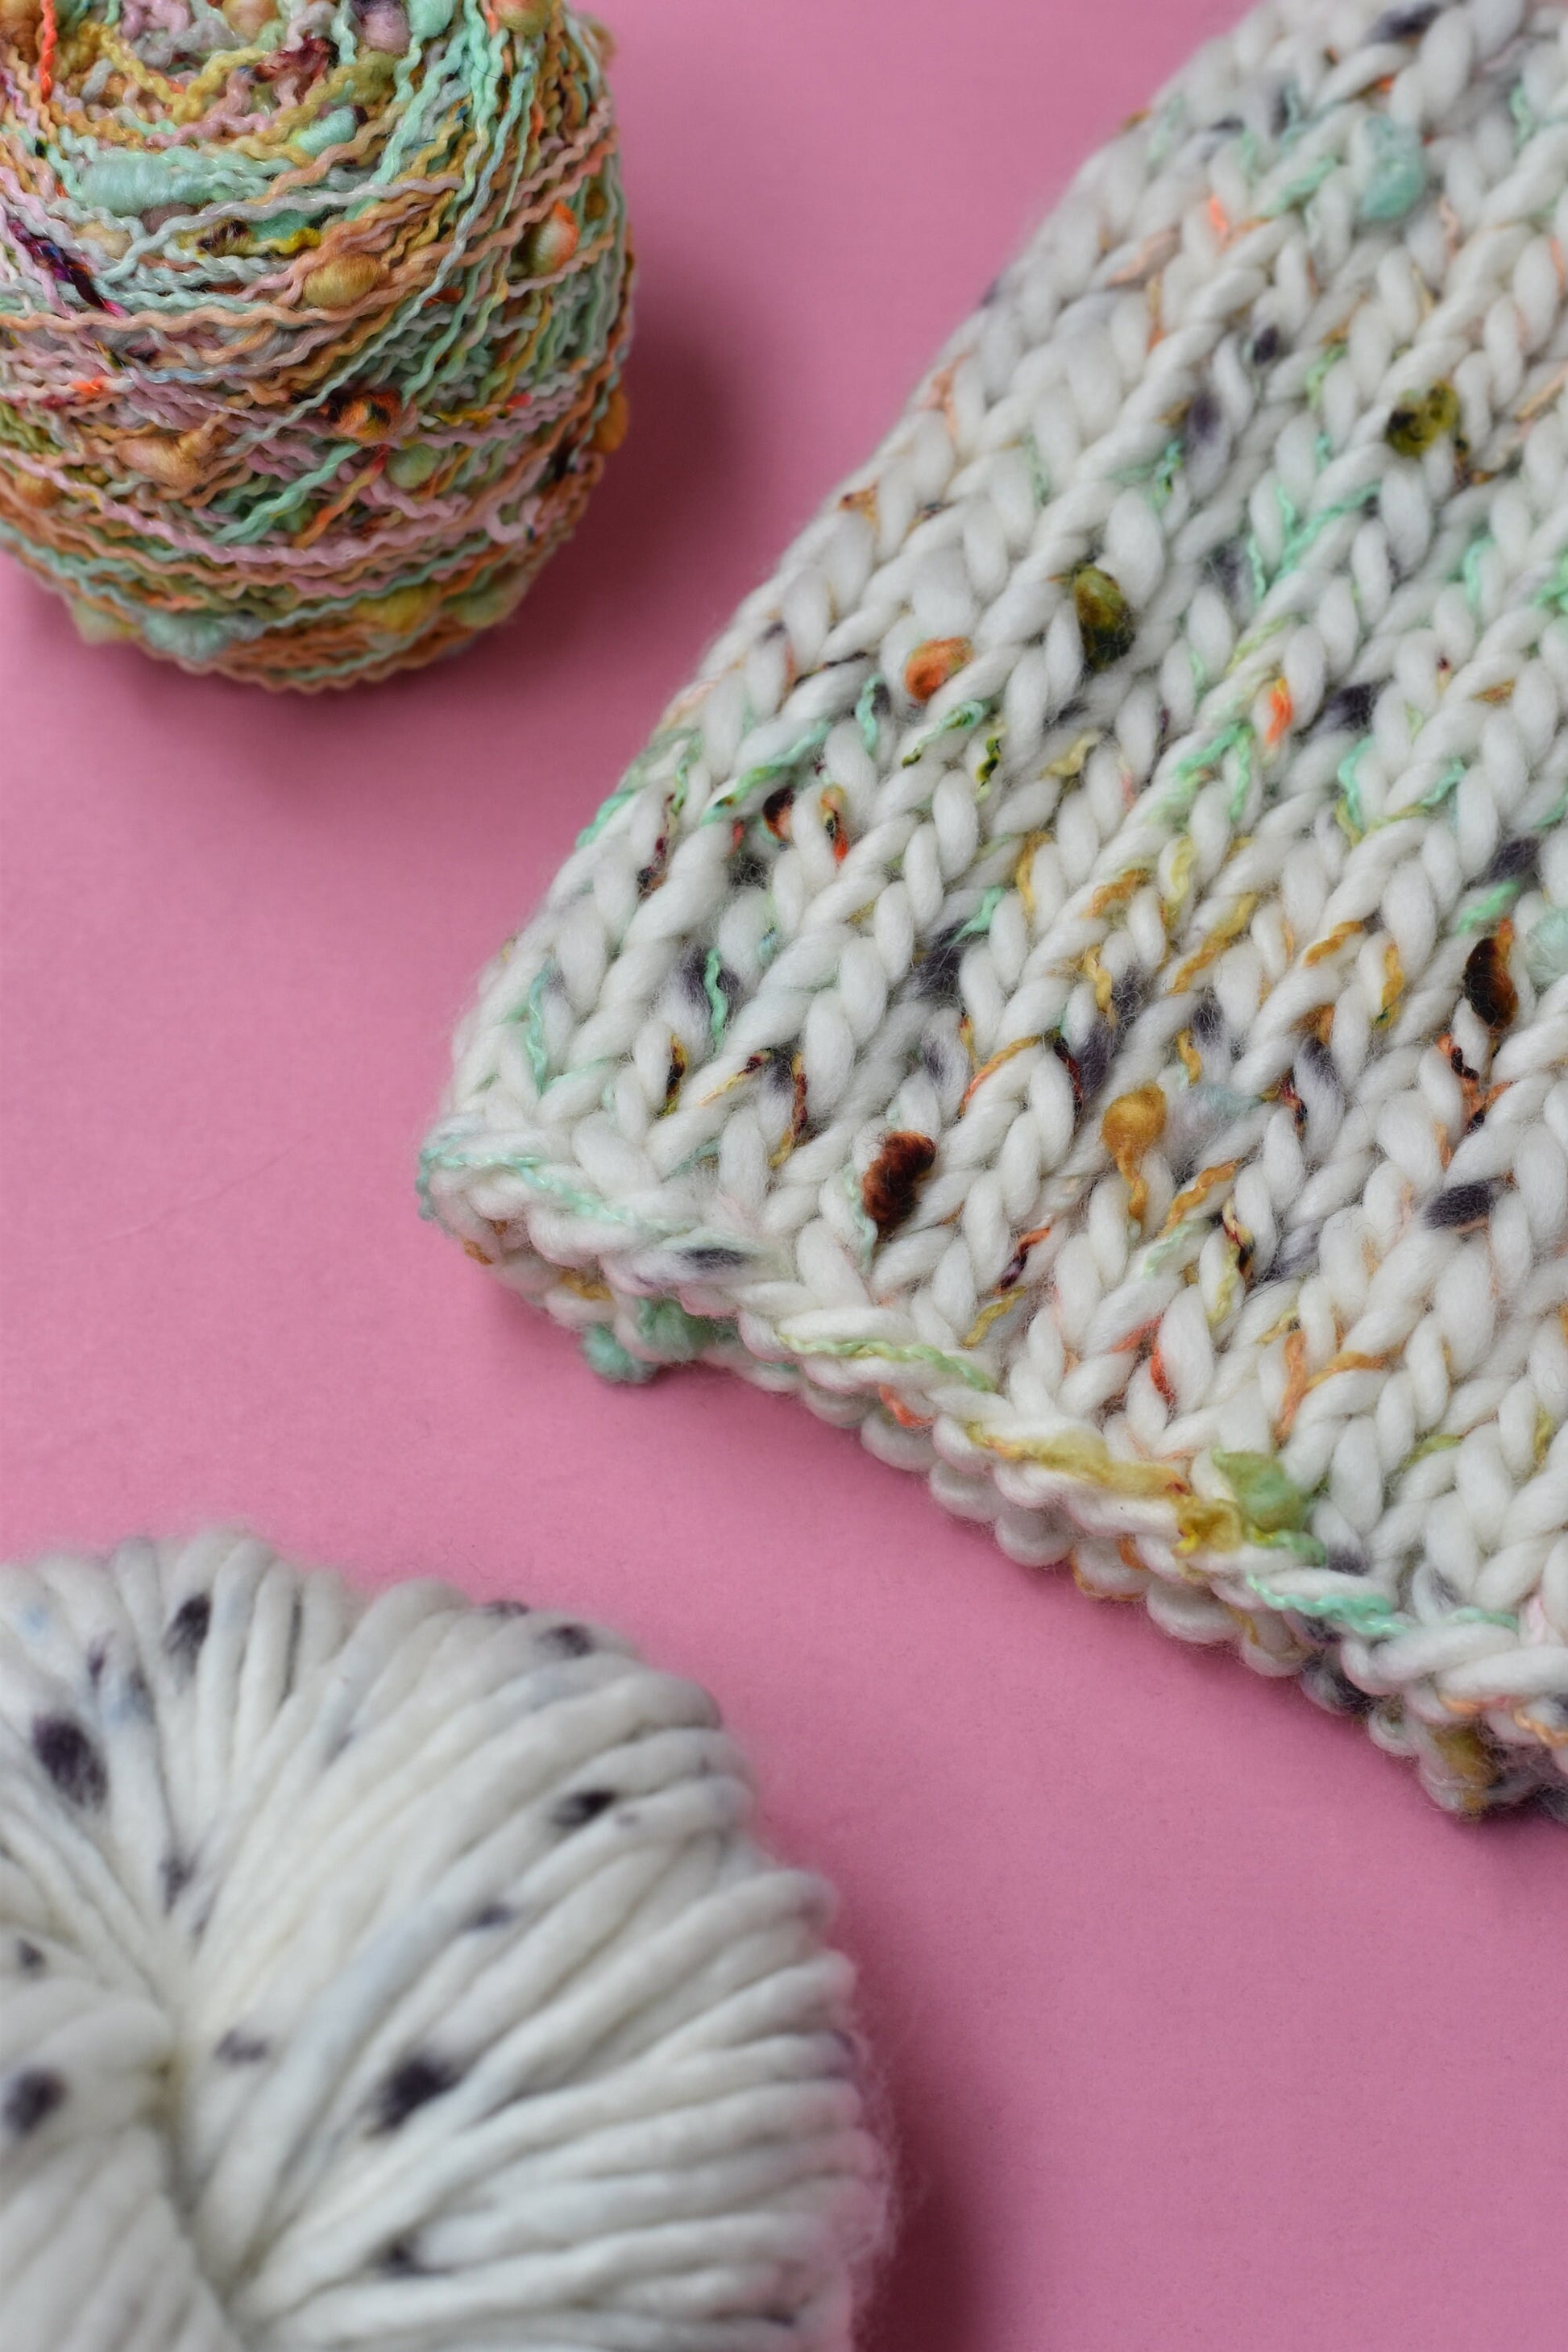 KNITTING PATTERN: Loppet Beanie | Easy Super Bulky Knit Hat Pattern | Slub Yarn Knitting Pattern